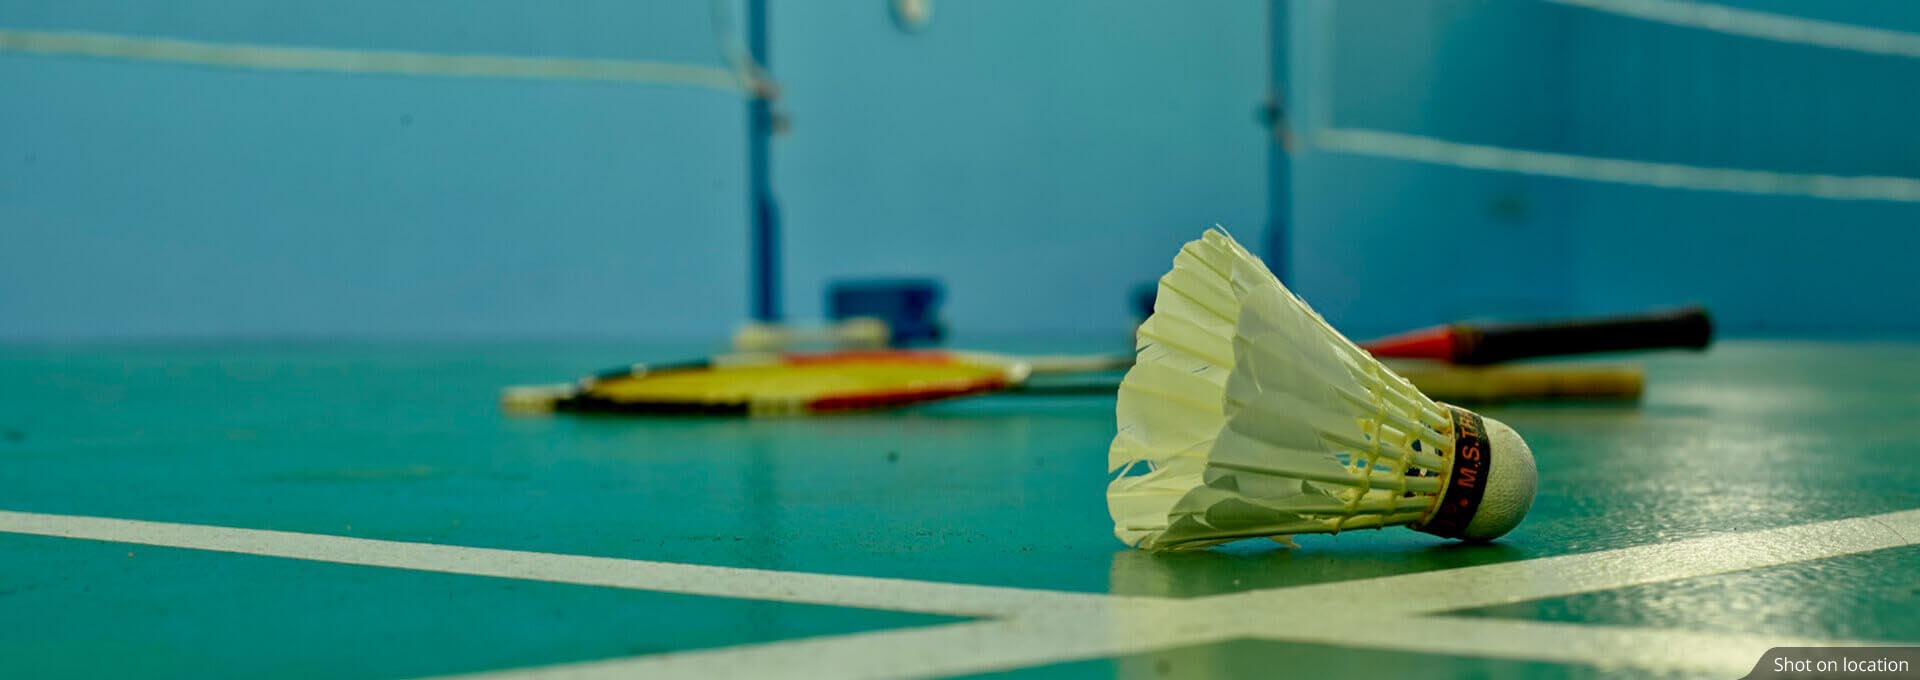 amalfi omr badminton